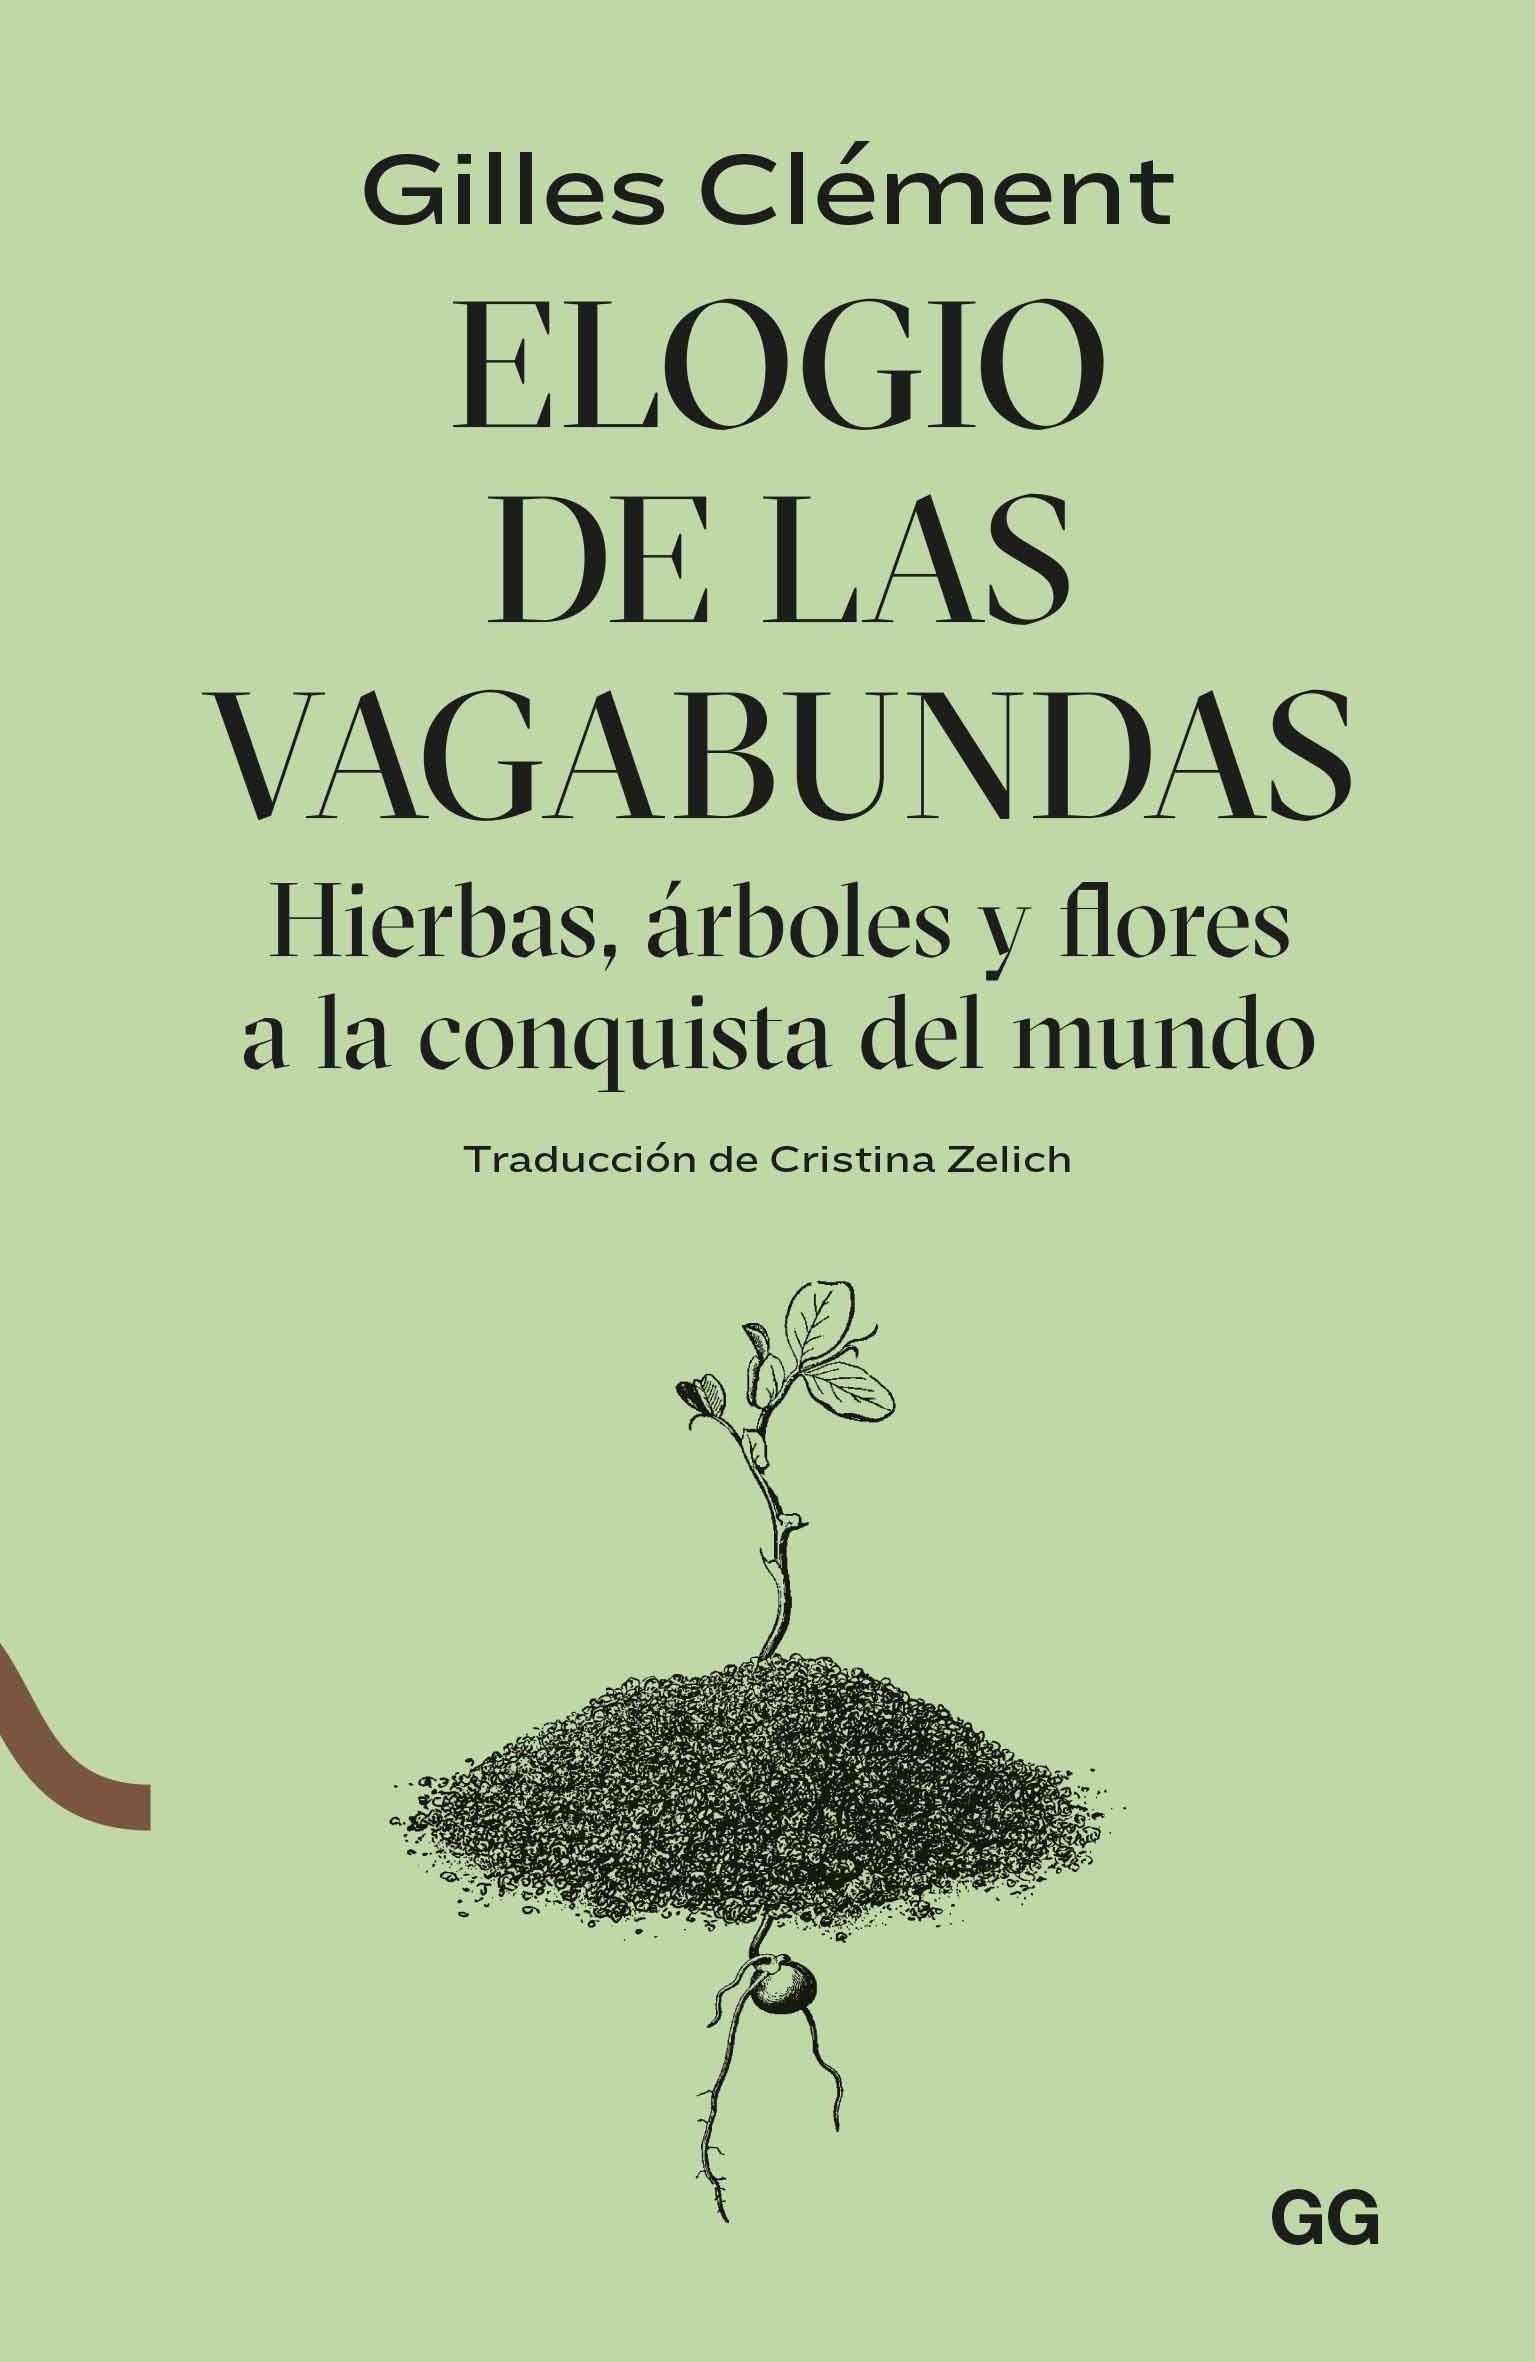 Elogio de las vagabundas "Hierbas, árboles y flores a la conquista del mundo". 